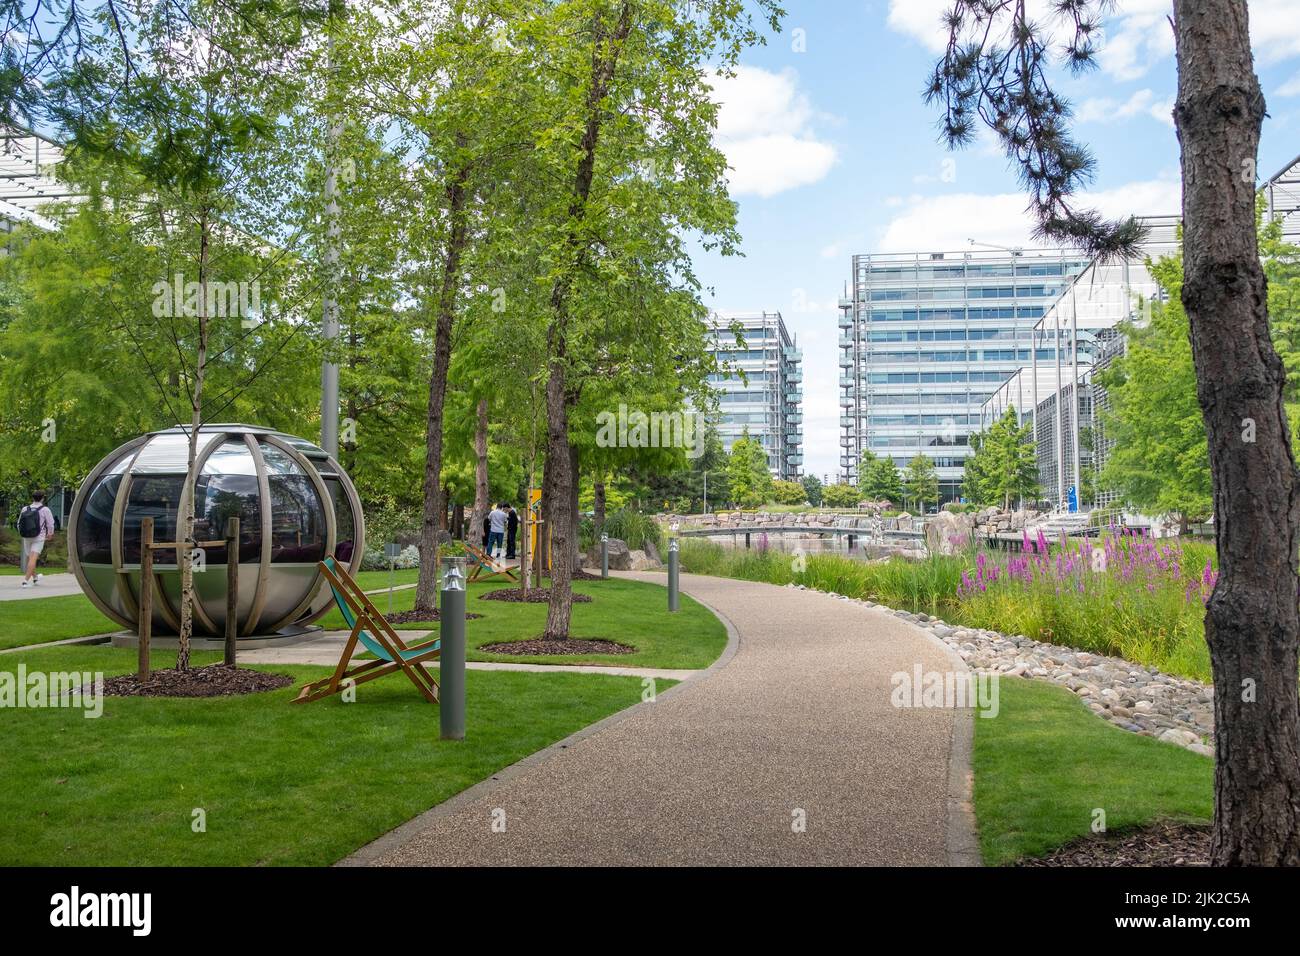 London - Juli 2022: LONDON - Chiswick Park in West London. Ein modernes Bürogebäude mit landschaftlich gestaltetem Gemeinschaftsraum Stockfoto